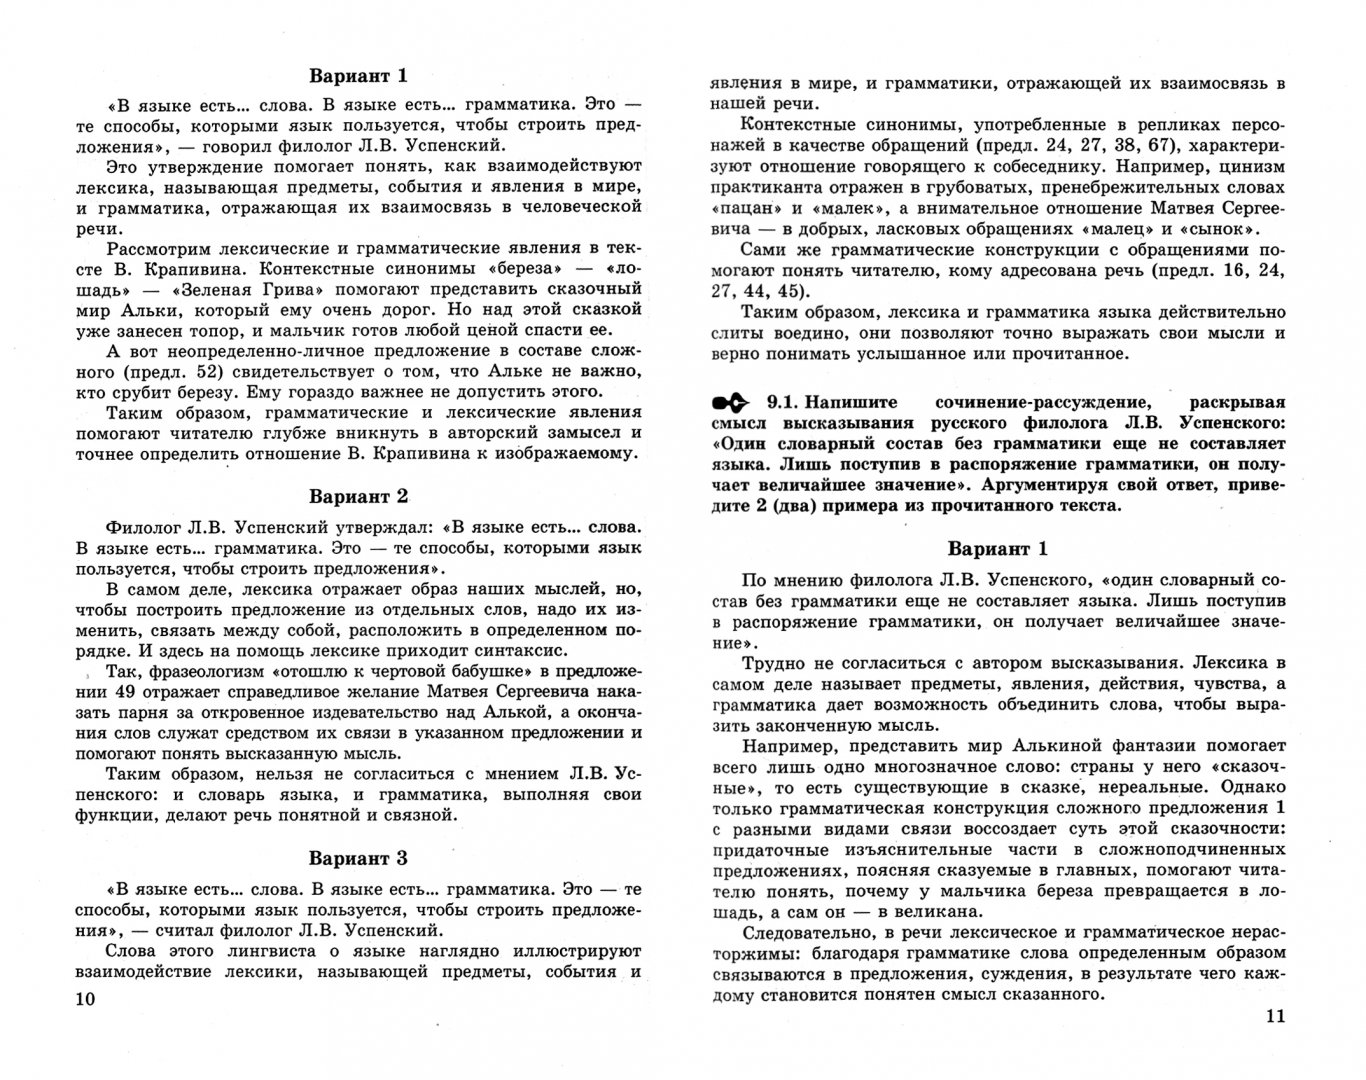 Экзаменационное сочинение по русскому языку